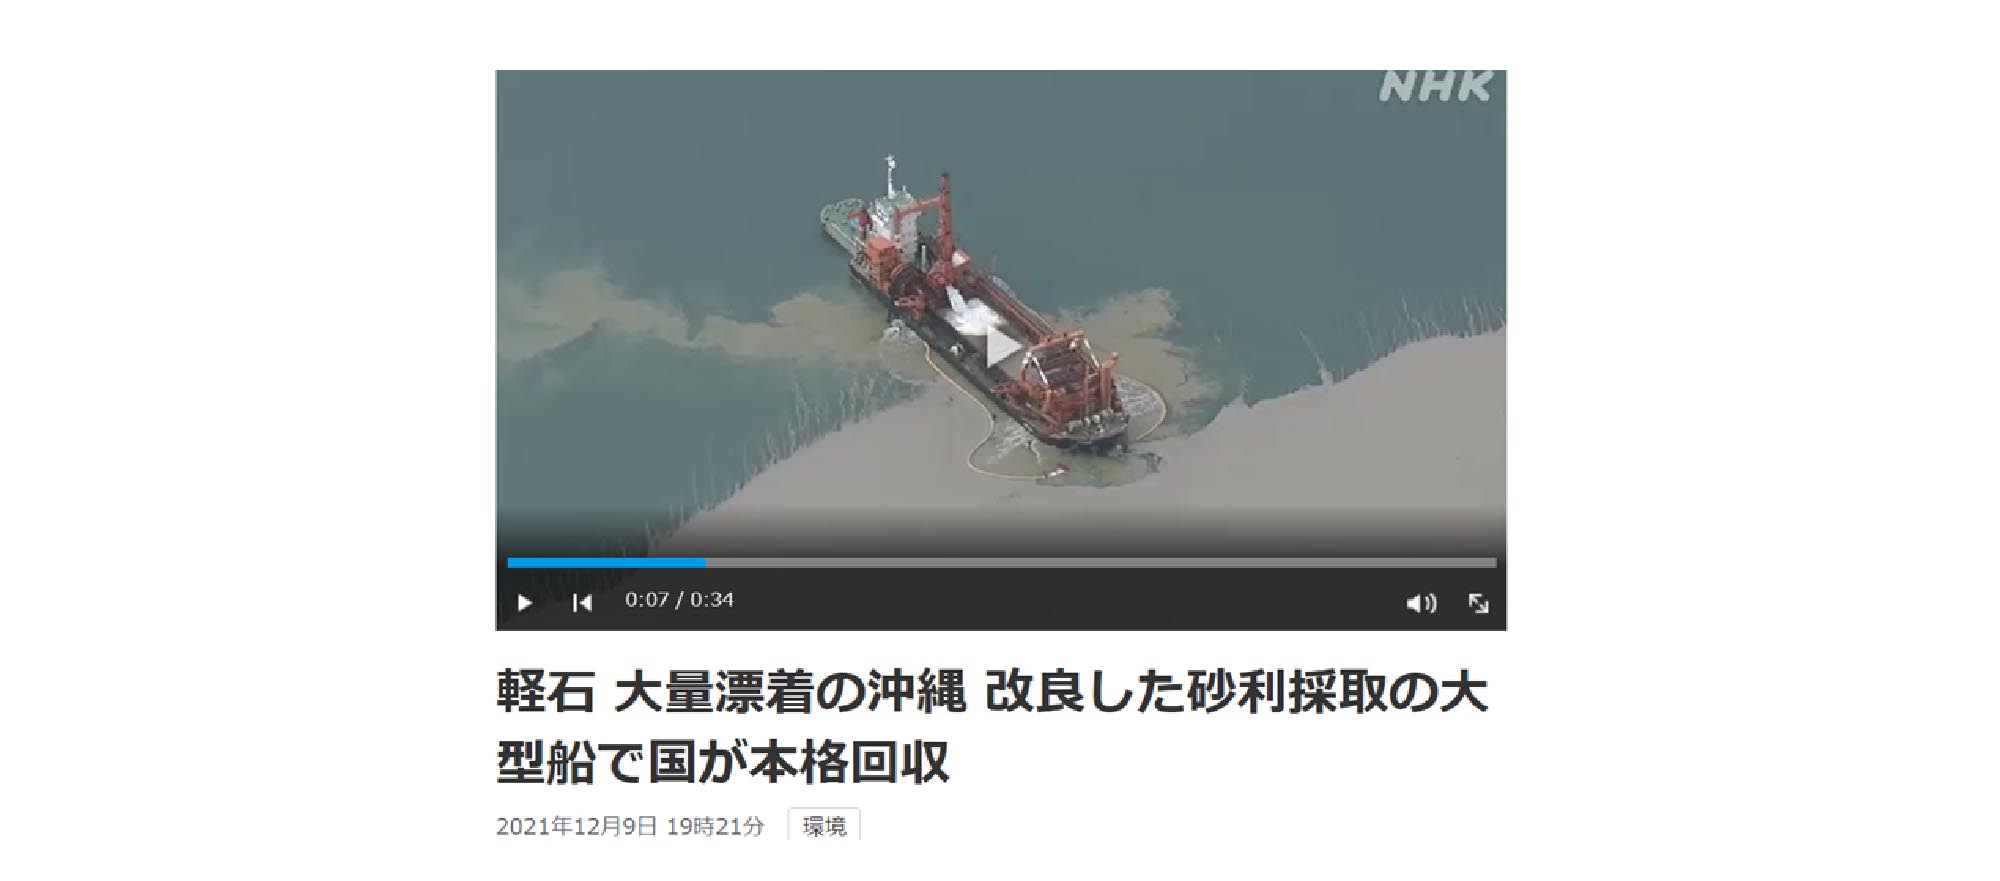 軽石 大量漂着の沖縄 改良した砂利採取の大型船で国が本格回収